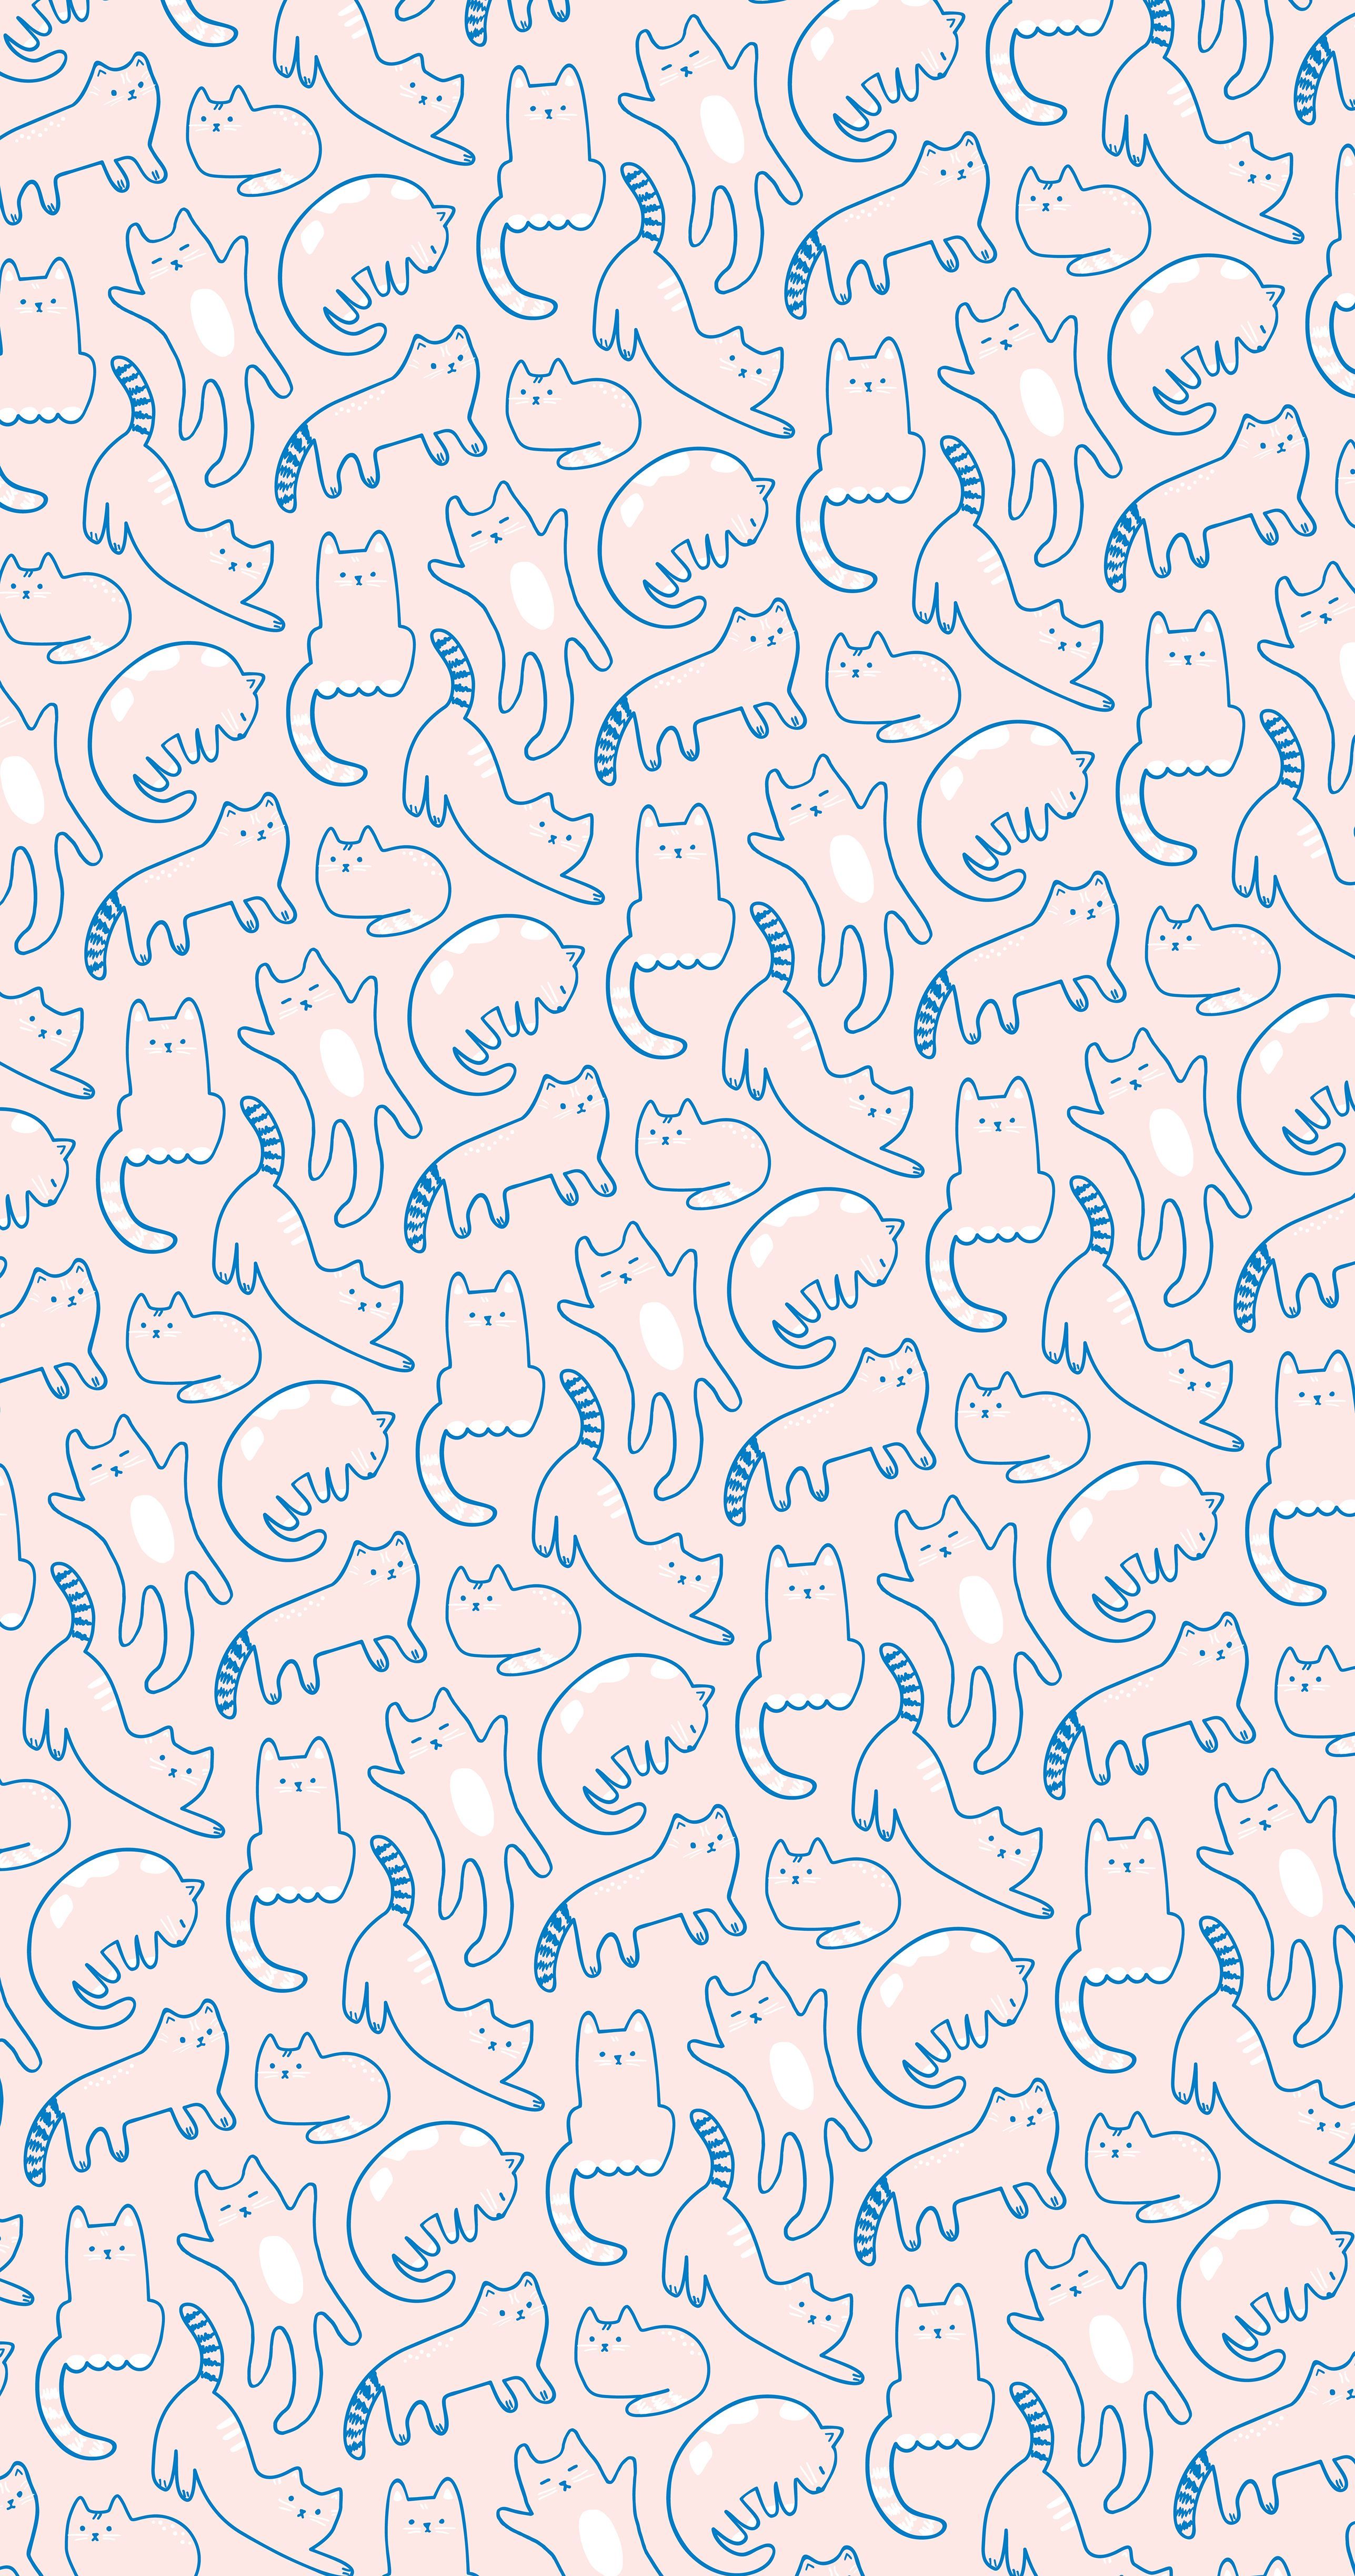 Cat Print Wallpapers